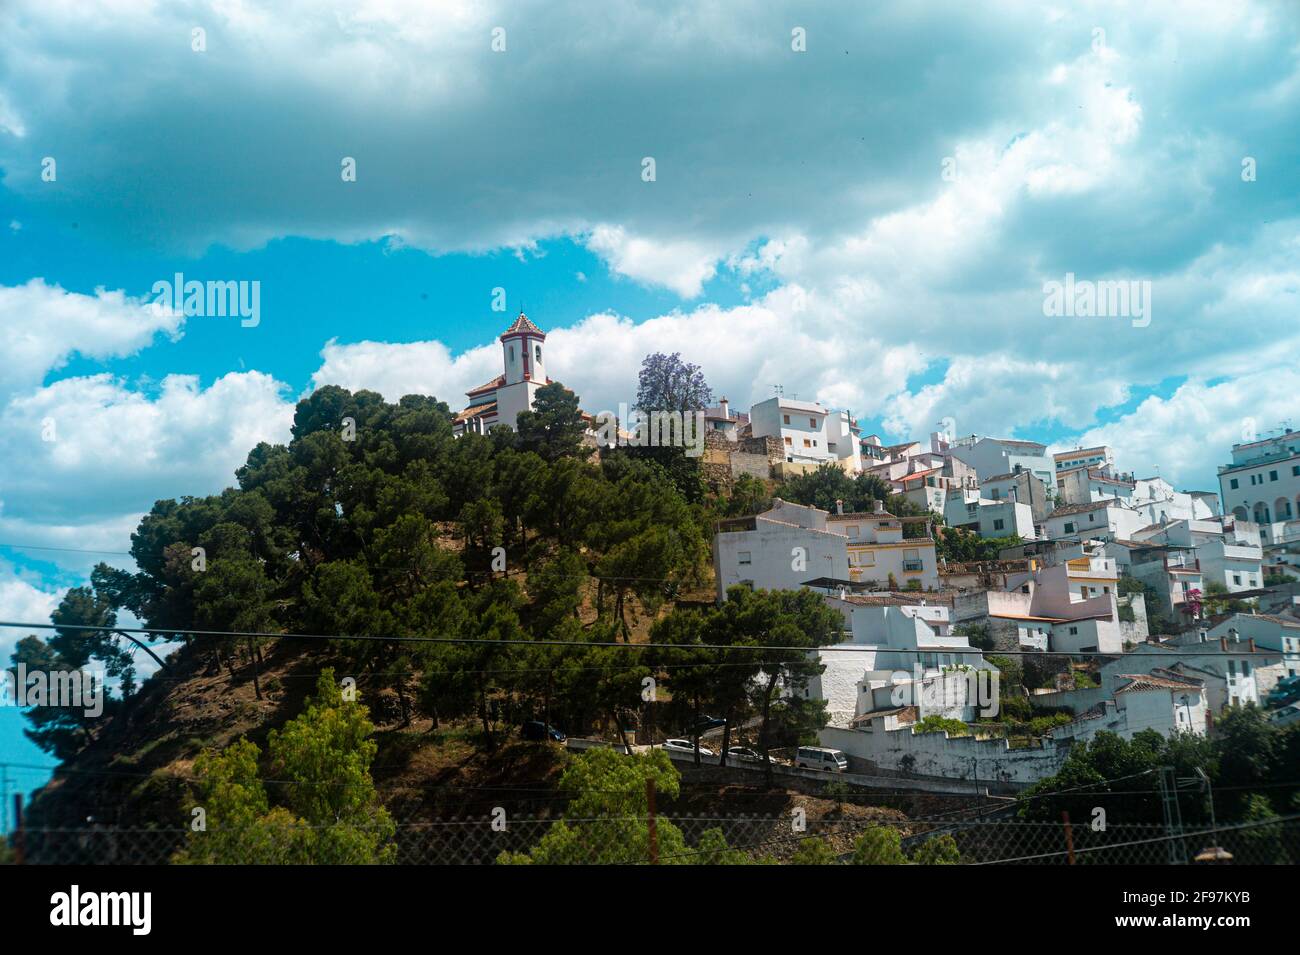 Vue spectaculaire de la ville blanche avec l'église au sommet de la colline, Alozaina, province de Malaga, Andalousie, Espagne, Europe de l'Ouest. Banque D'Images